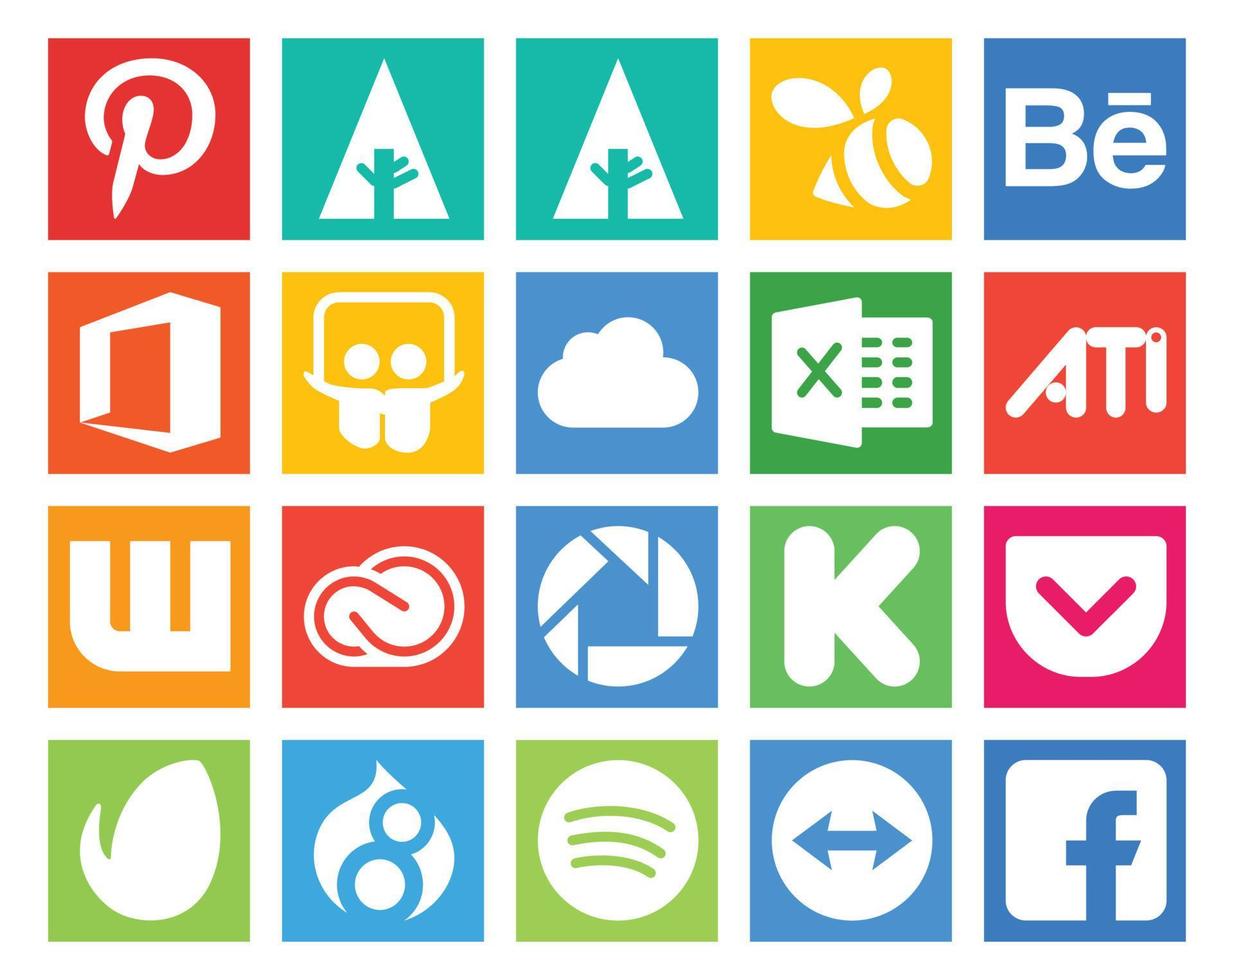 20 Social Media Icon Pack inklusive Drupal Pocket Ati Kickstarter Adobe vektor